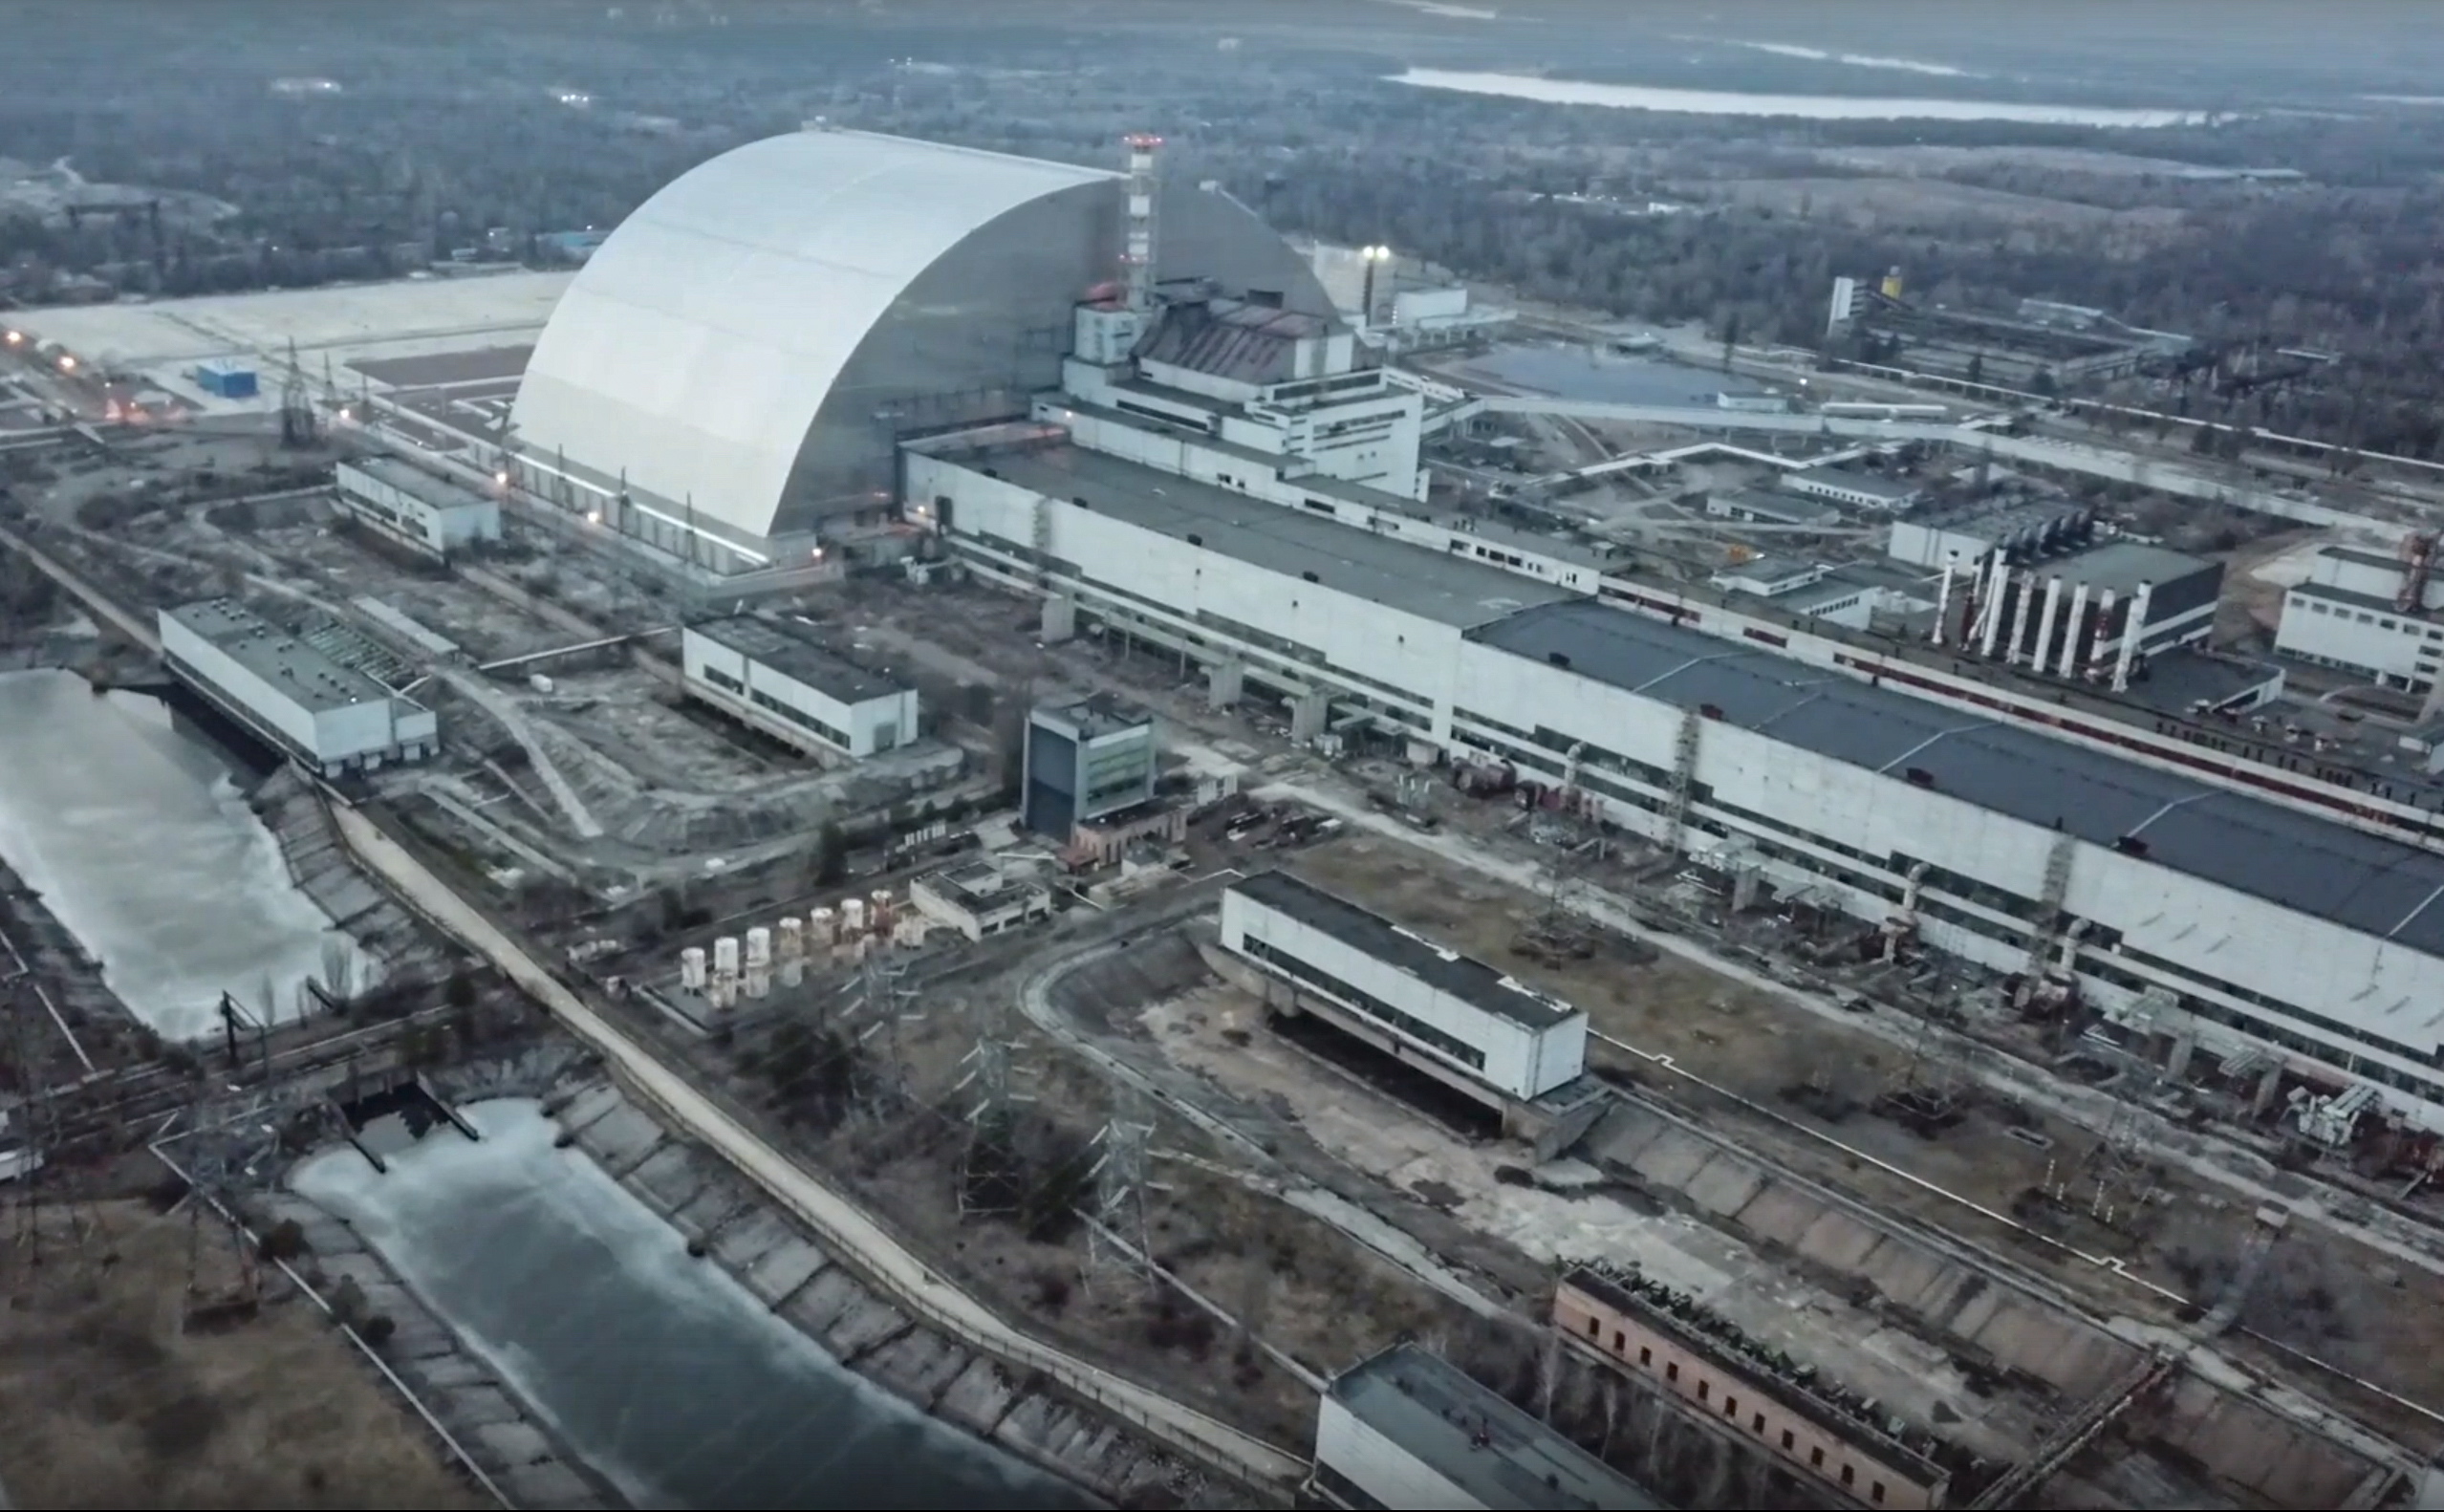 Чернобыльская аэс атомная электростанция. Саркофаг на Чернобыльской АЭС 2022. Атомная электростанция Чернобыль сейчас. АЭС Чернобыль сейчас 2022. Припять станция АЭС.